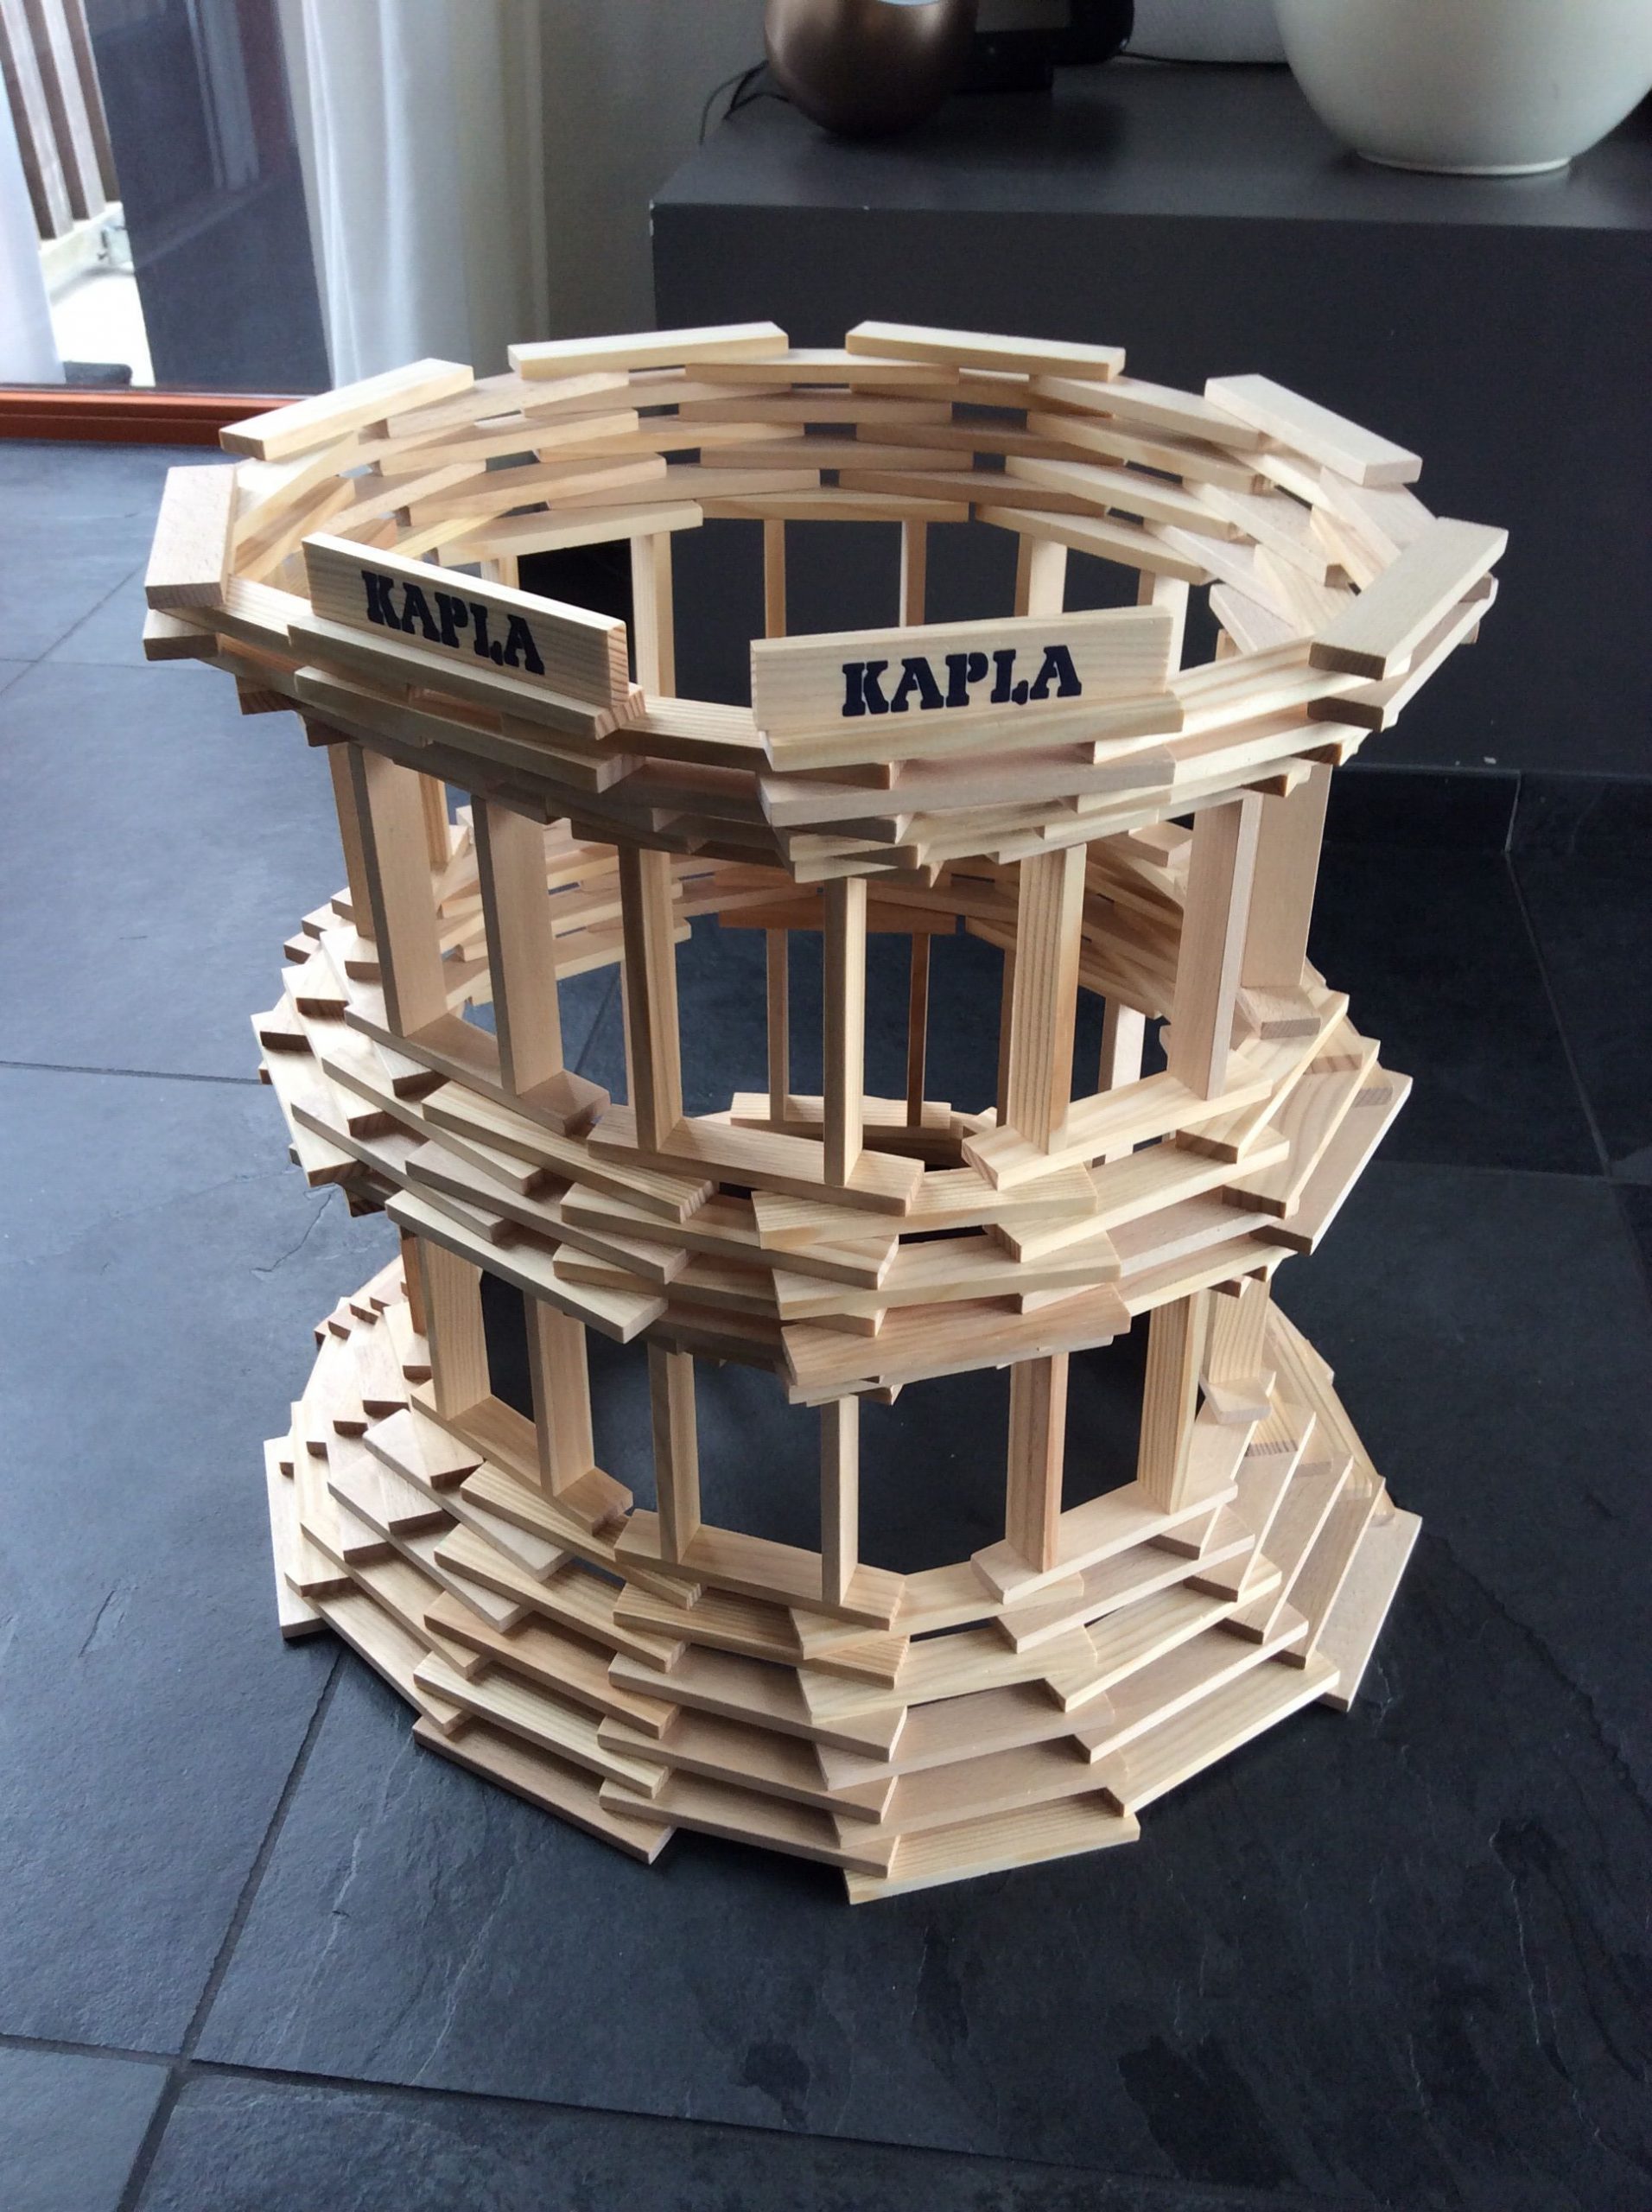 Kapla Inspiration: Stadium, Coliseum, Round Tower | Keva avec Kapla Idee Construction